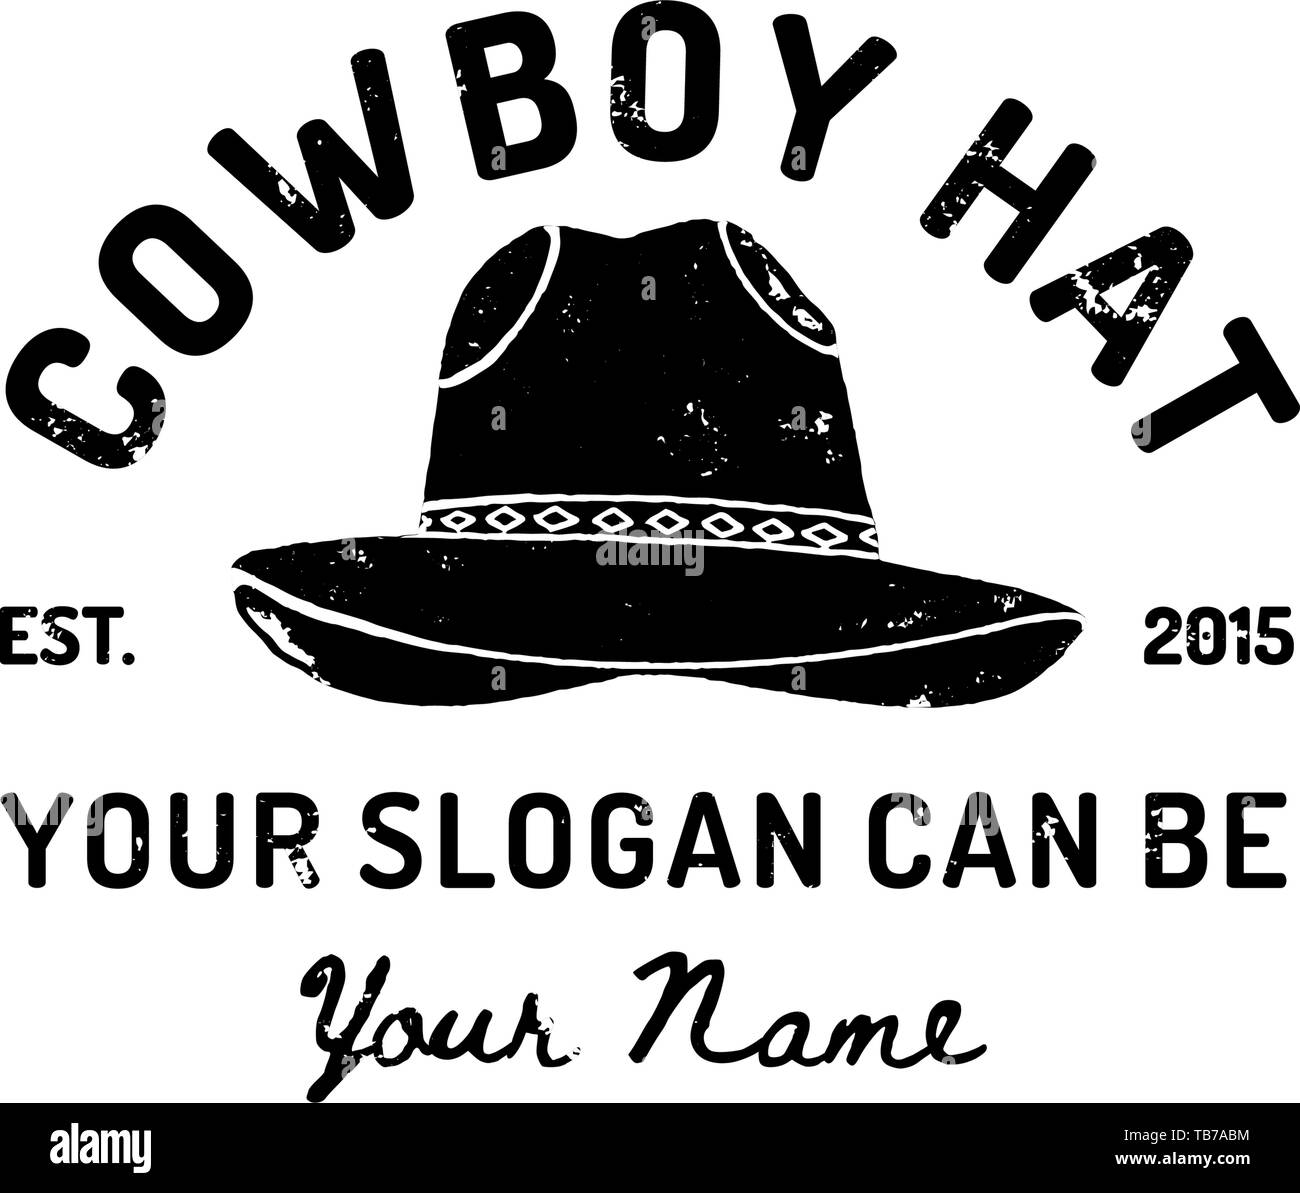 Vintage Western Cowboy Hat Logo. Symbole du vecteur de l'Ouest sauvage, au Texas. US label Retro Typographie Grunge Style. Modèle pour imprimer, poster, t-shirt, couvrir, une bannière ou une autre entreprise Illustration de Vecteur